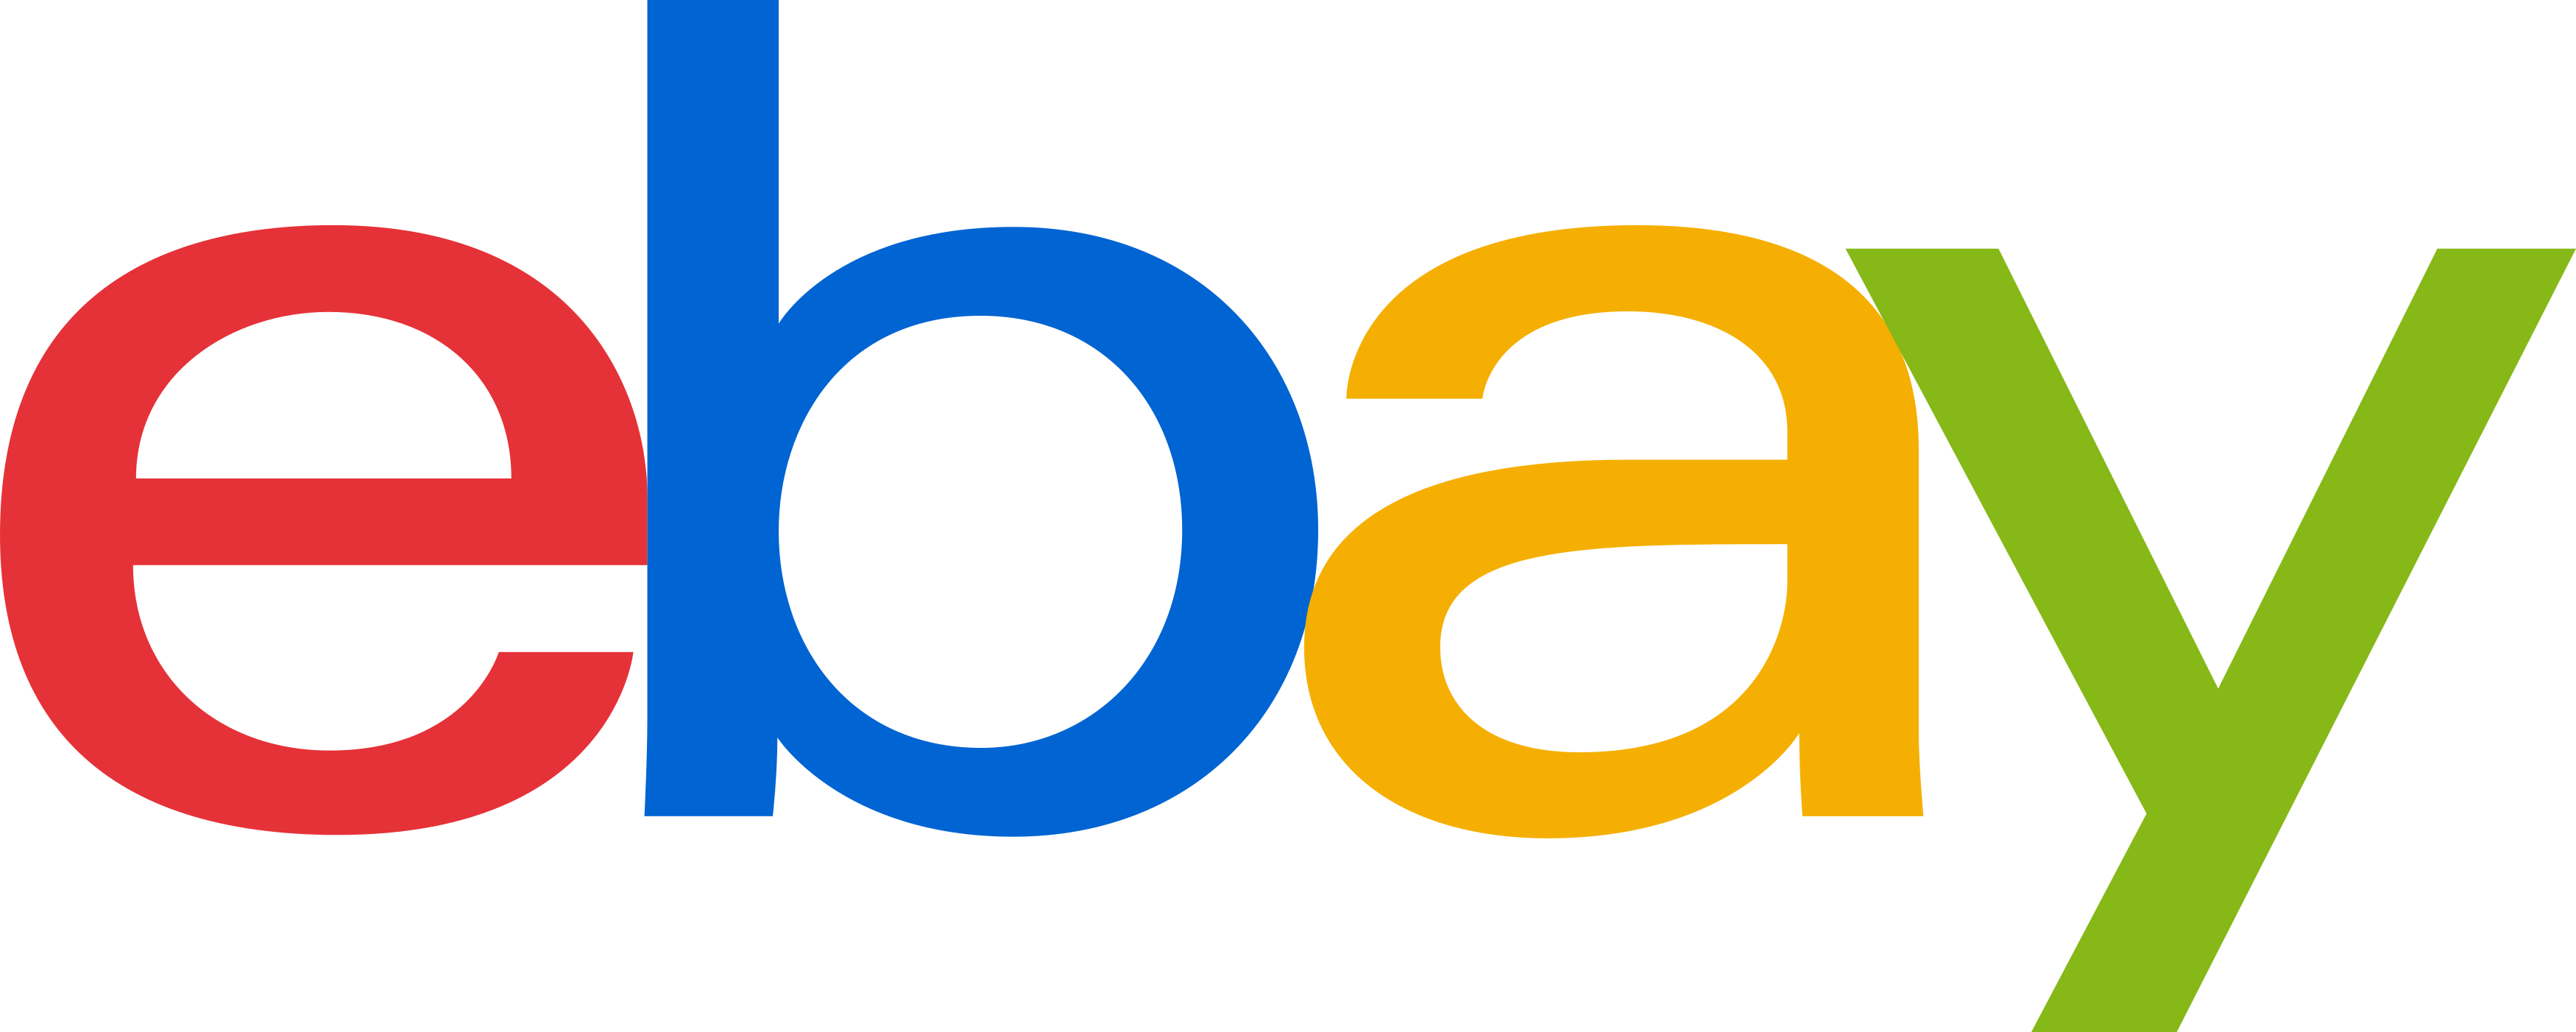 Logo de ebay SVG